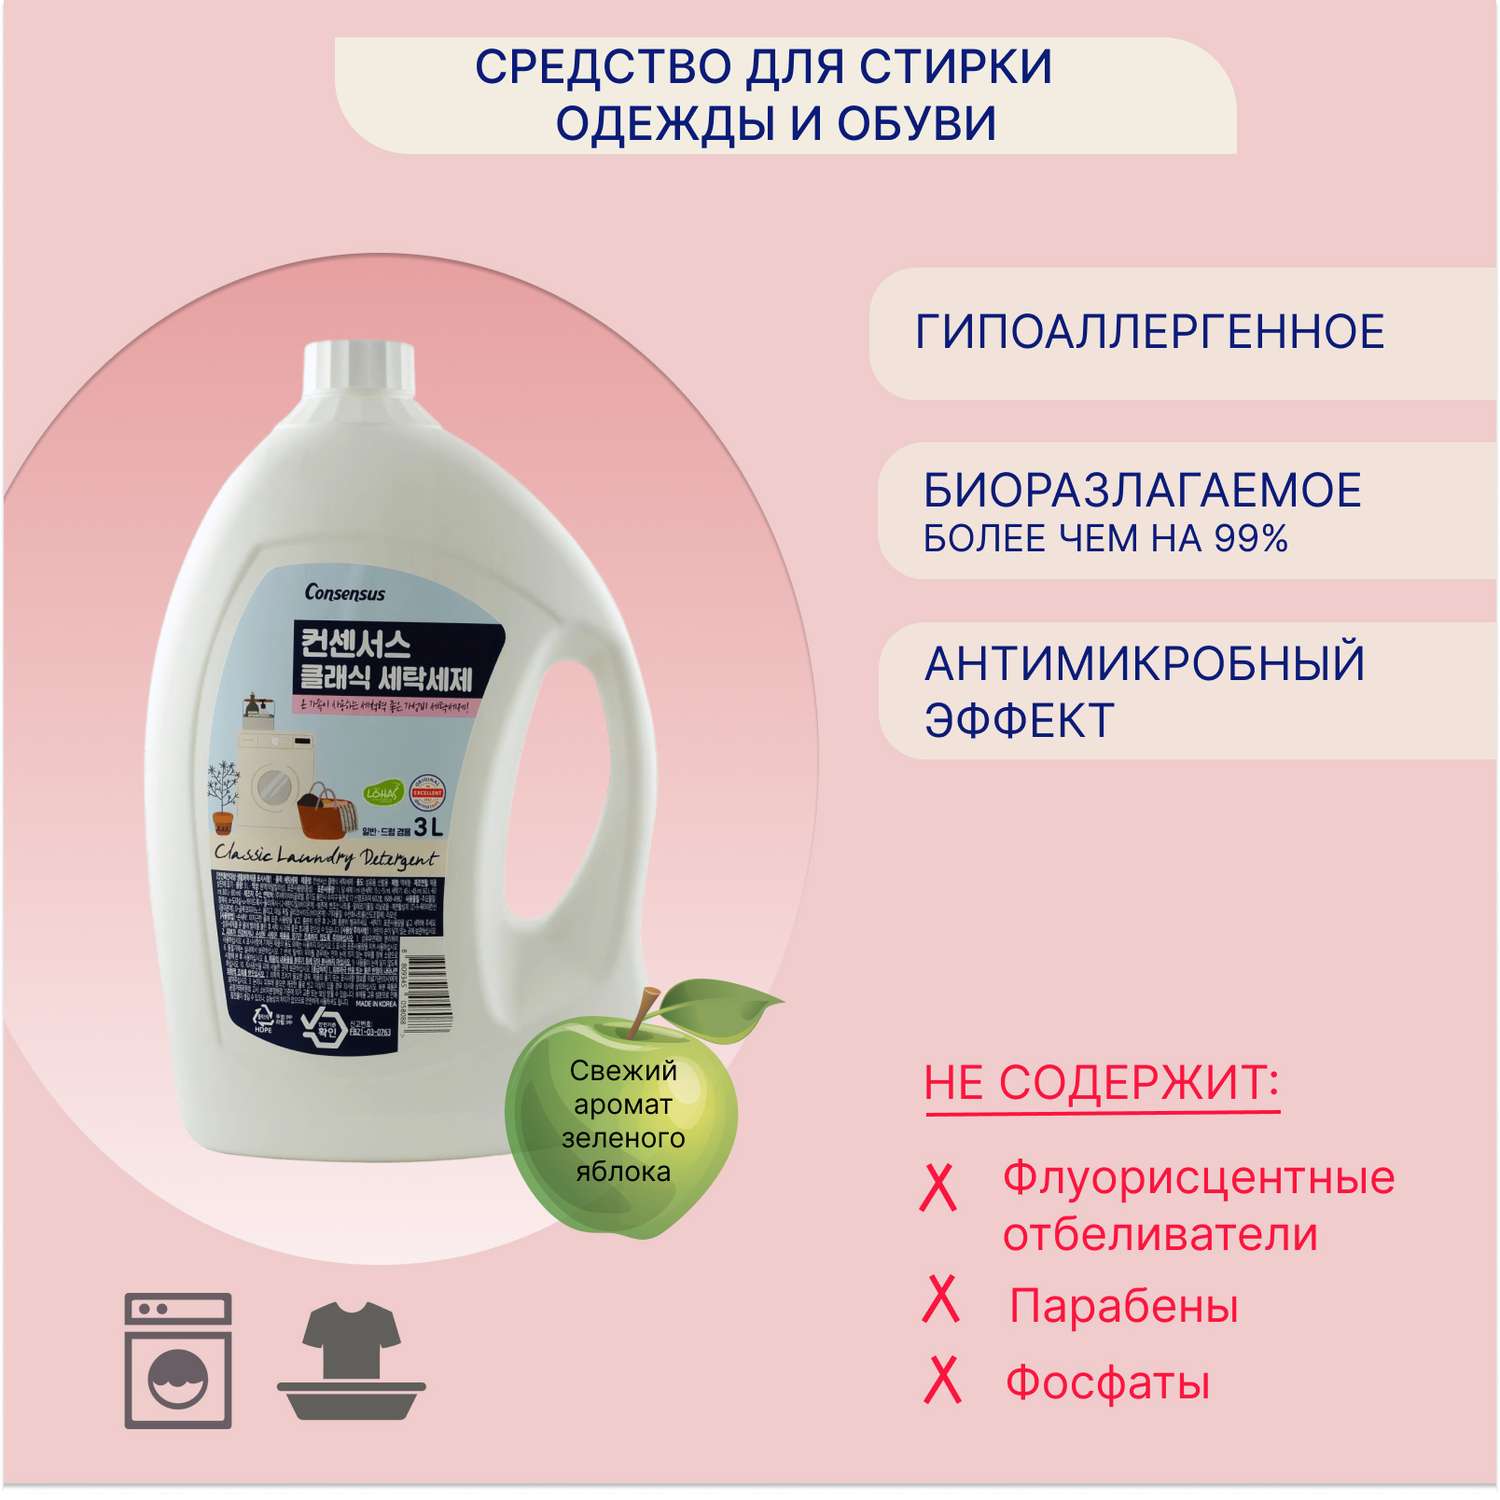 Жидкое средство для стирки Consensus с энзимами и растительными компонентами аромат зеленого яблока 3 л - фото 3